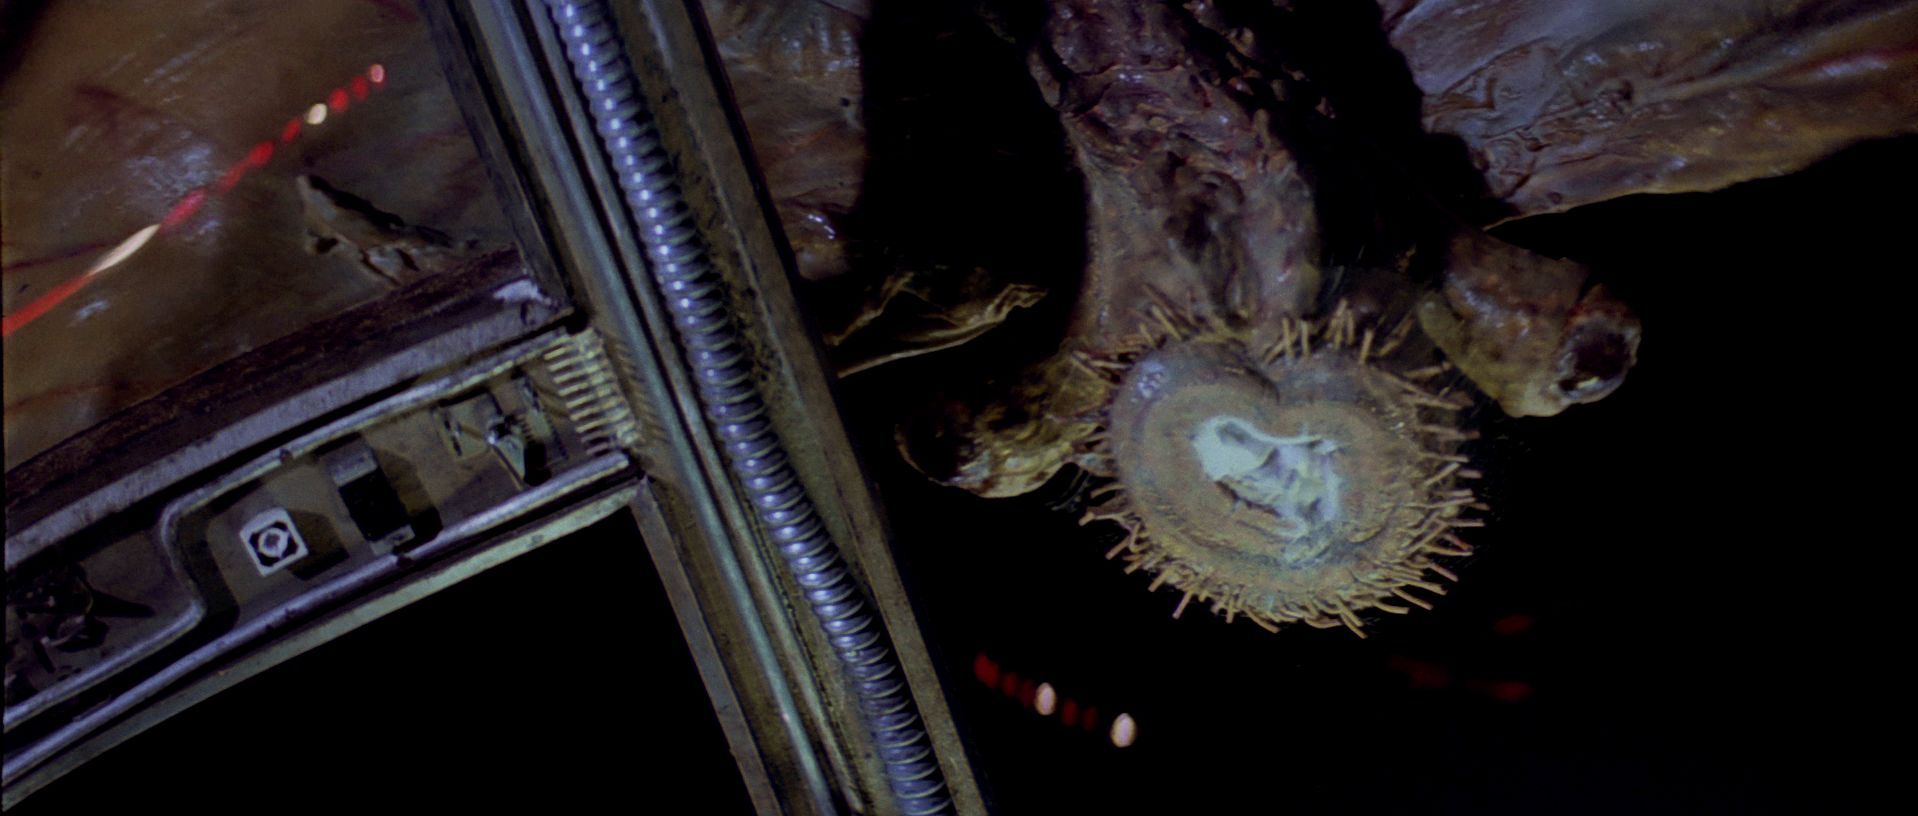 ¿Qué criaturas atacan en el espacio al Halcón Milenario en su huida de Hoth?